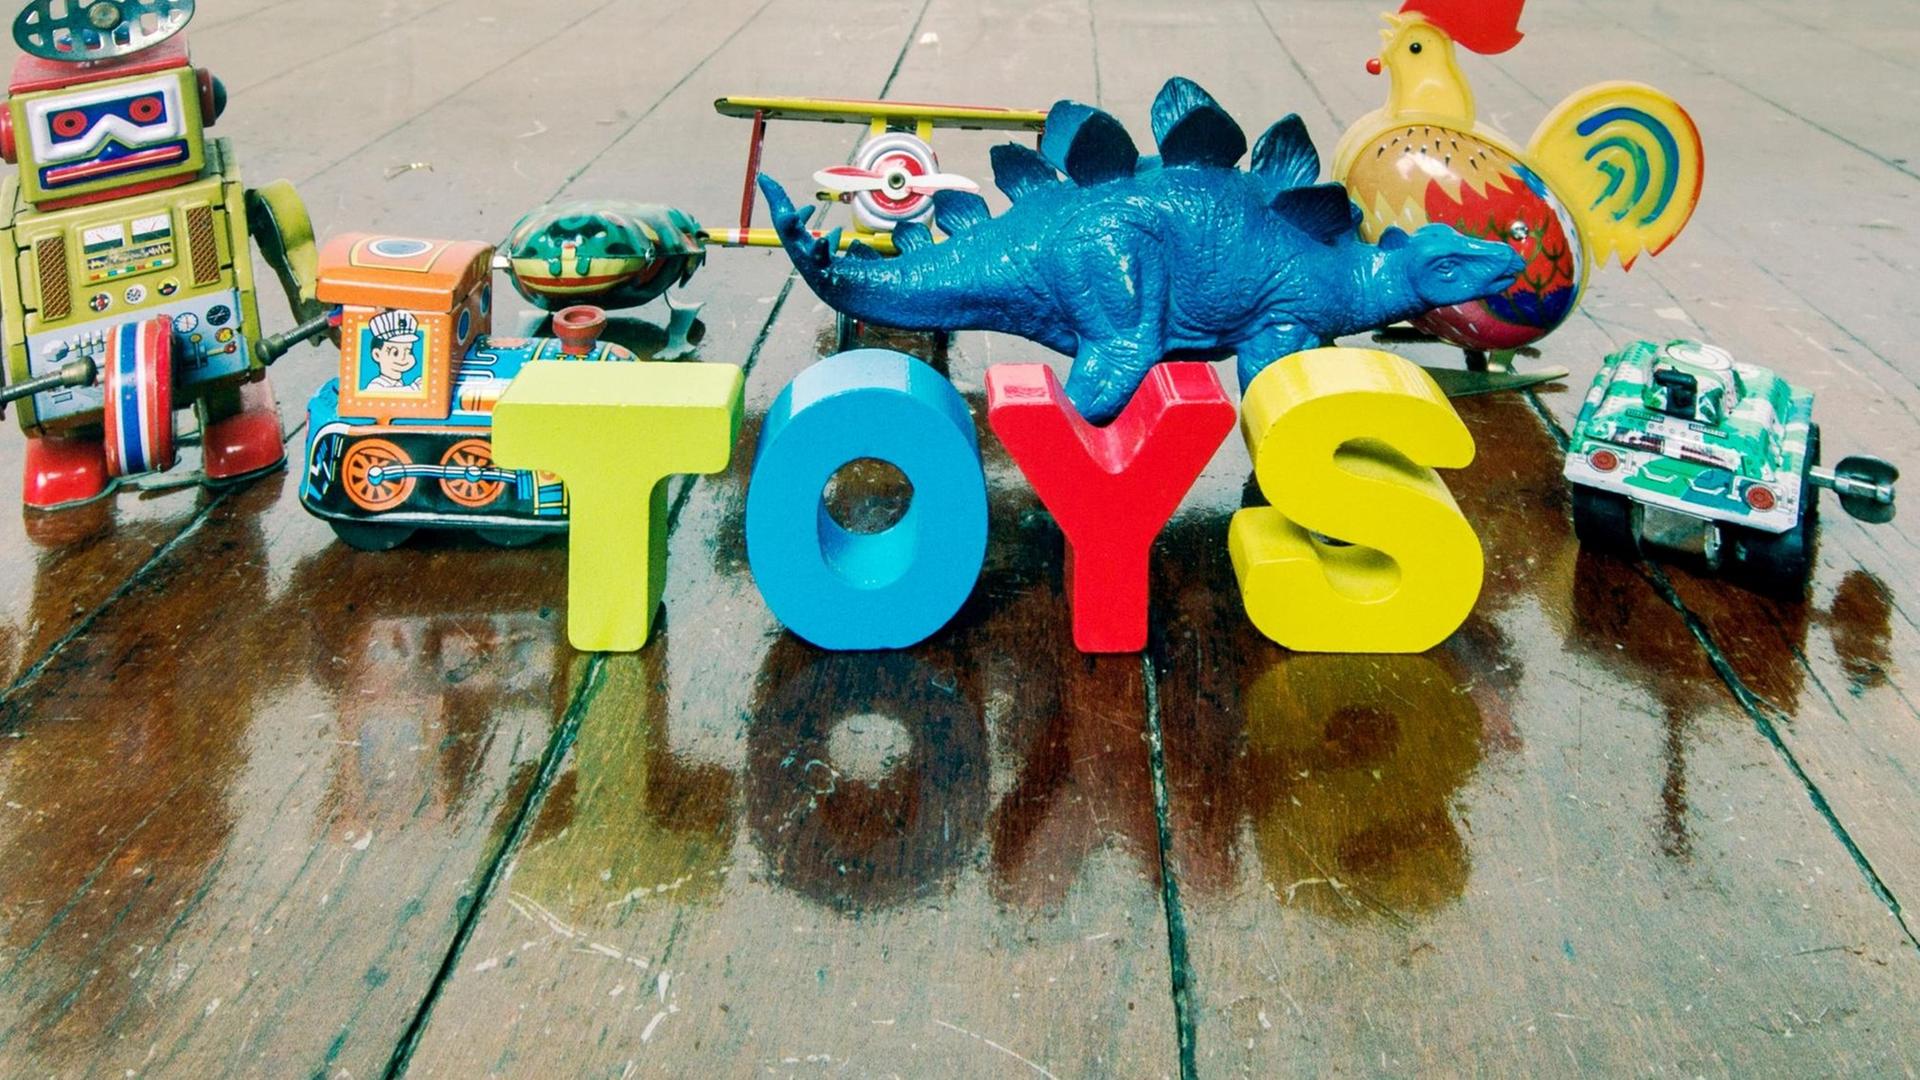 Spielzeug ist nicht immer so unschuldig wie es wirkt (Symbolbild)